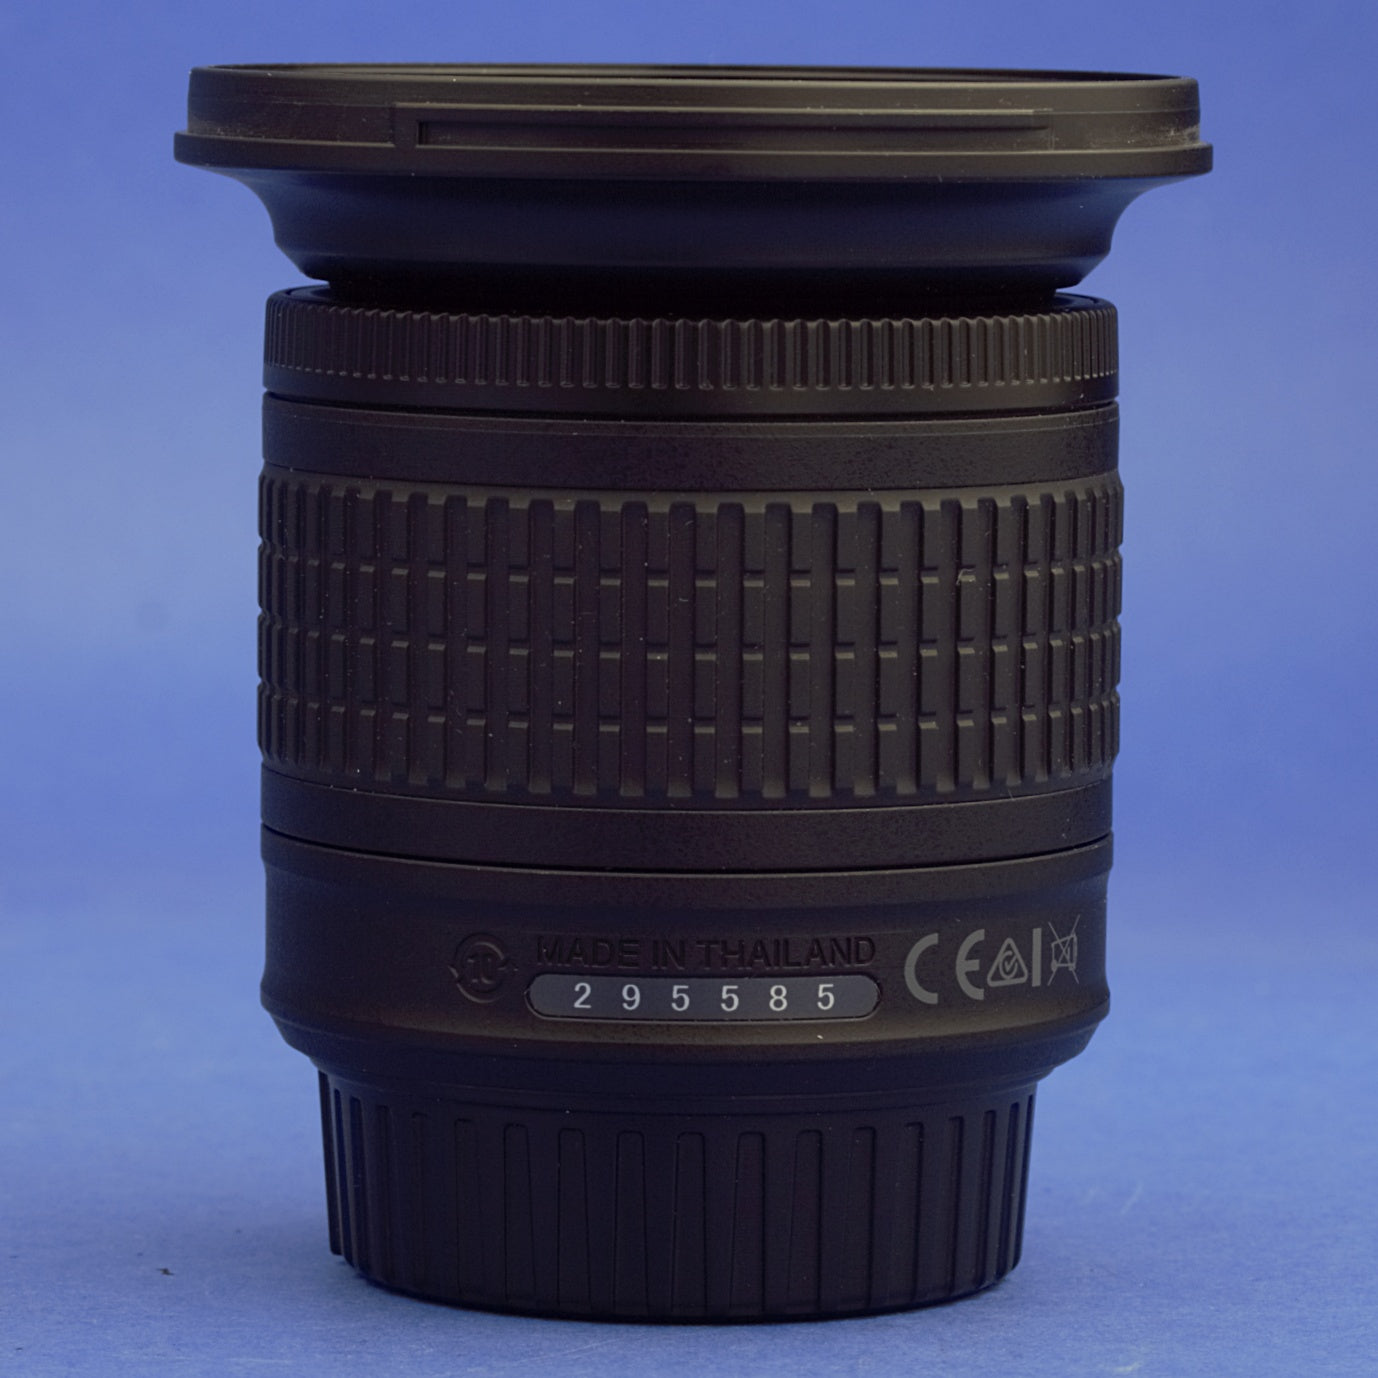 Nikon AF-P Nikkor 10-20mm 4.5-5.6 VR Lens Mint Condition